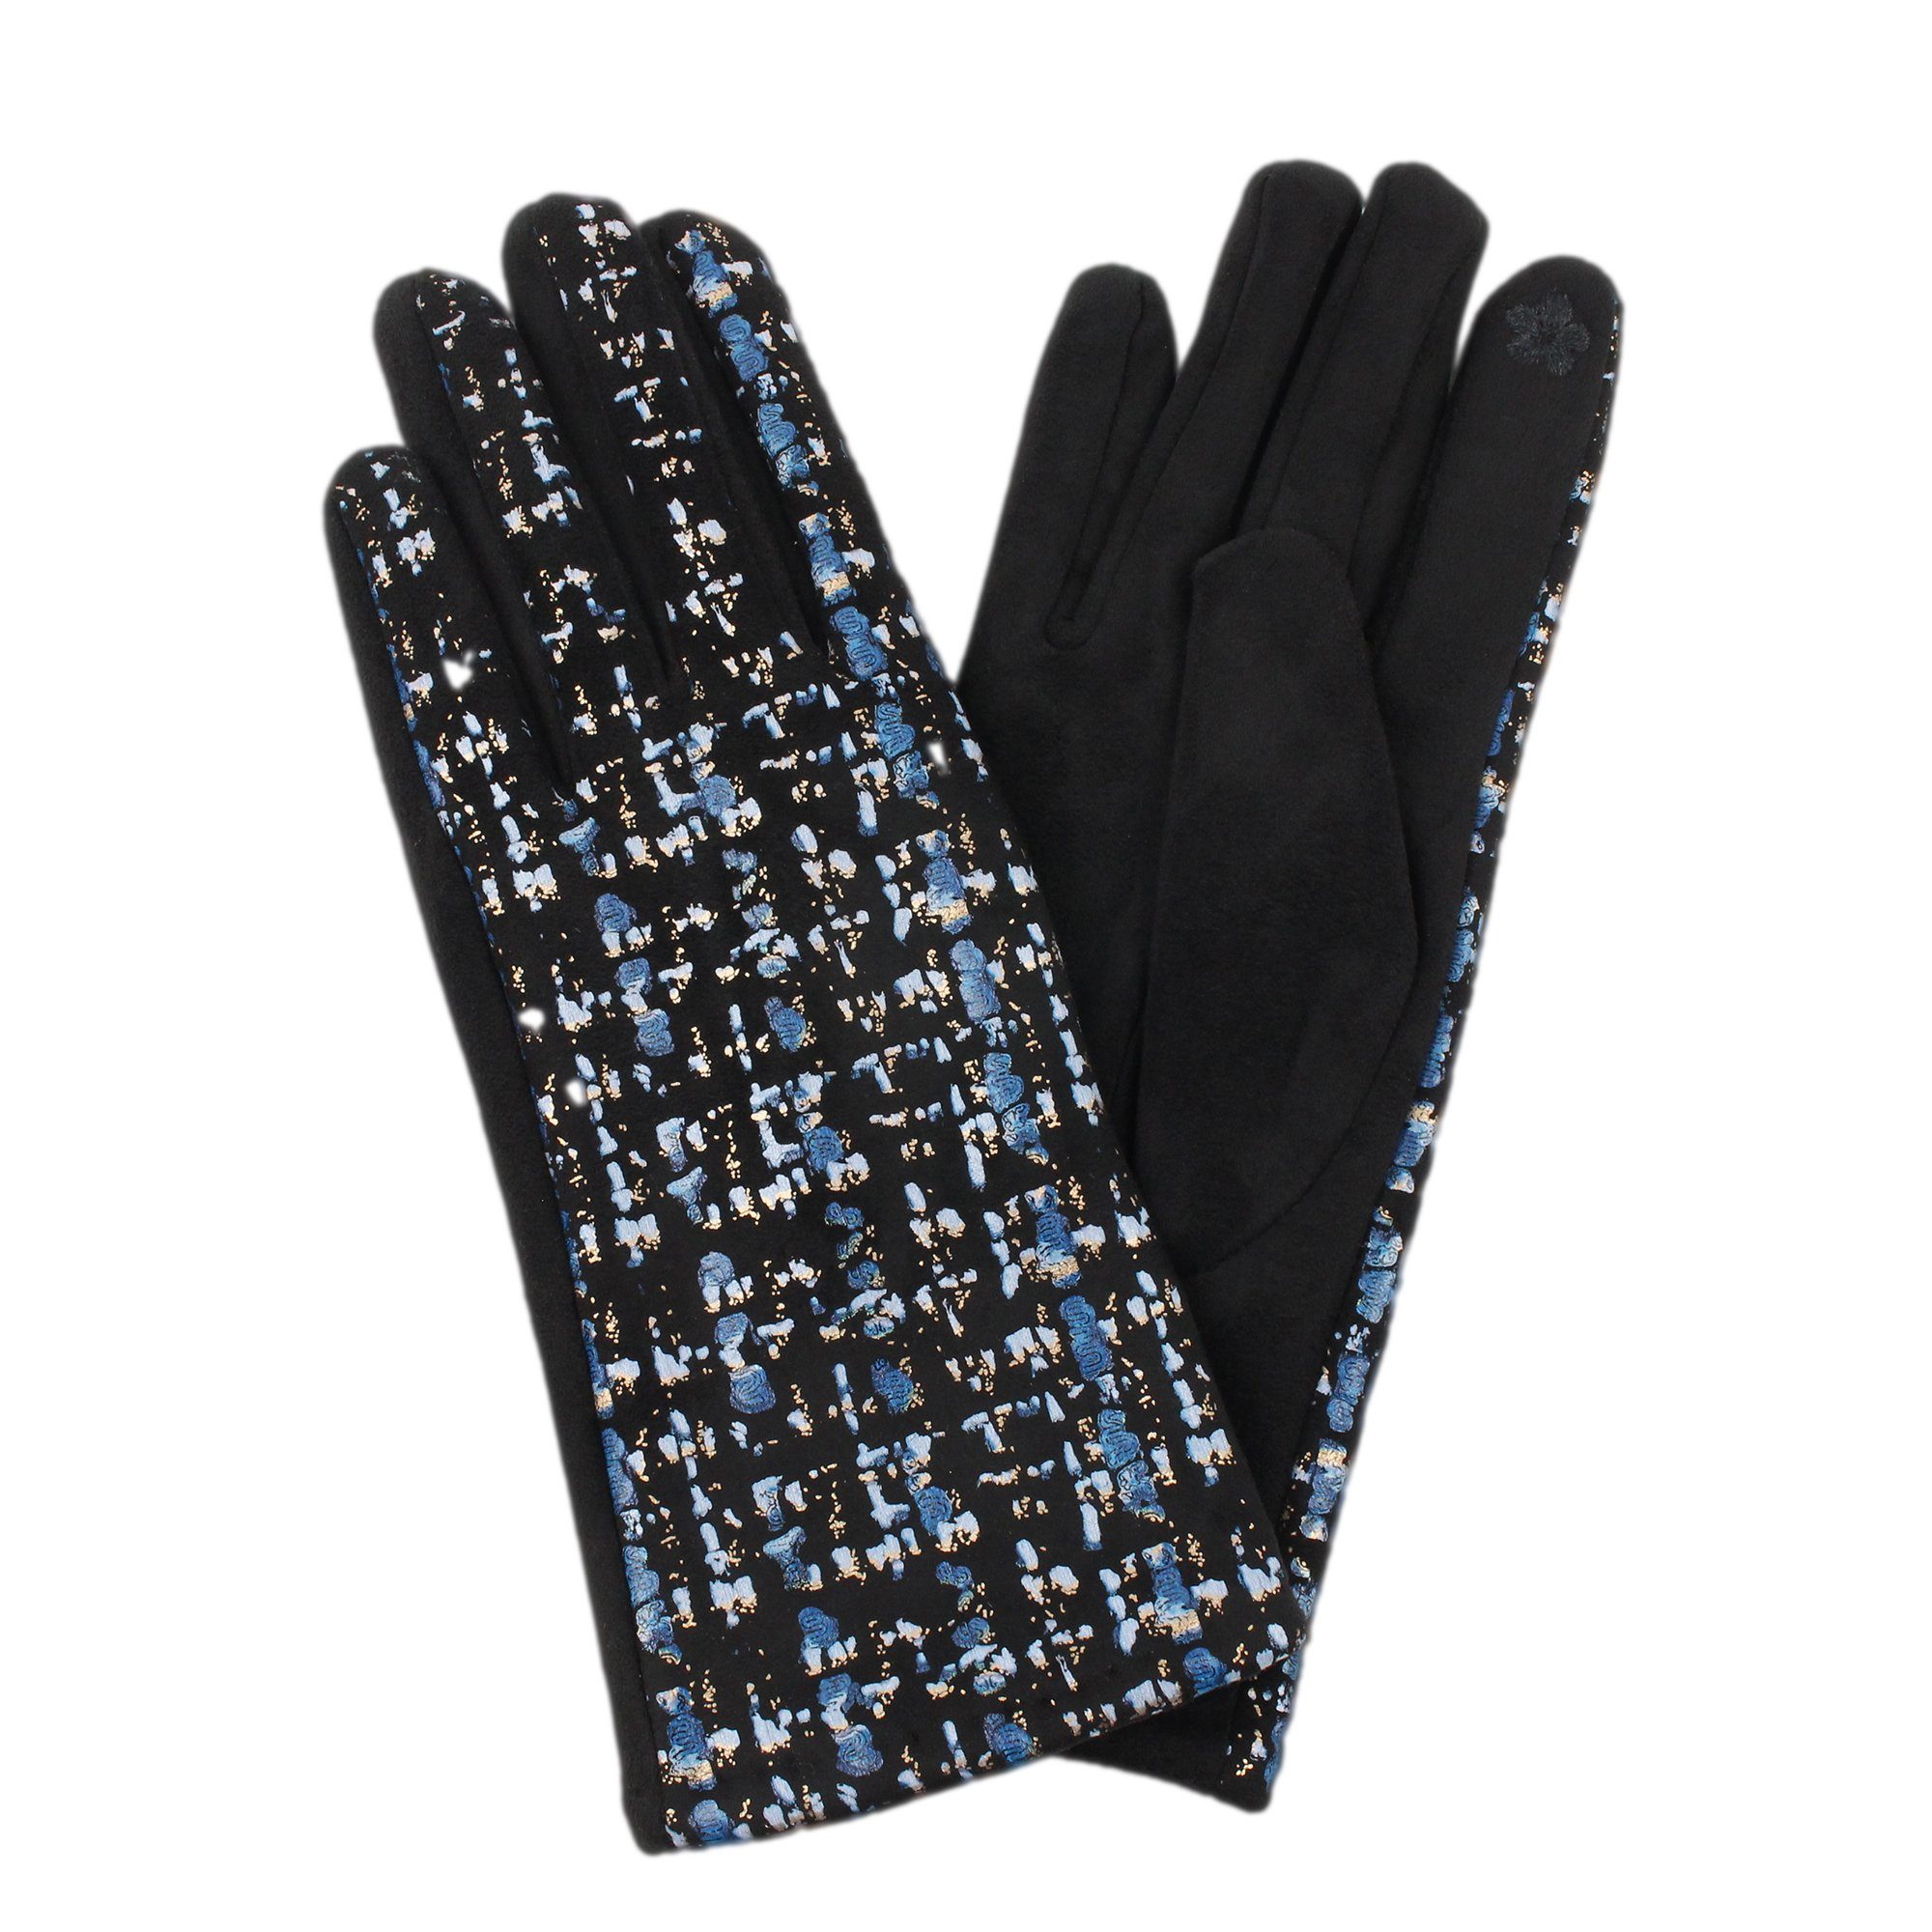 ZEBRO blau Fleecehandschuhe Handschuh